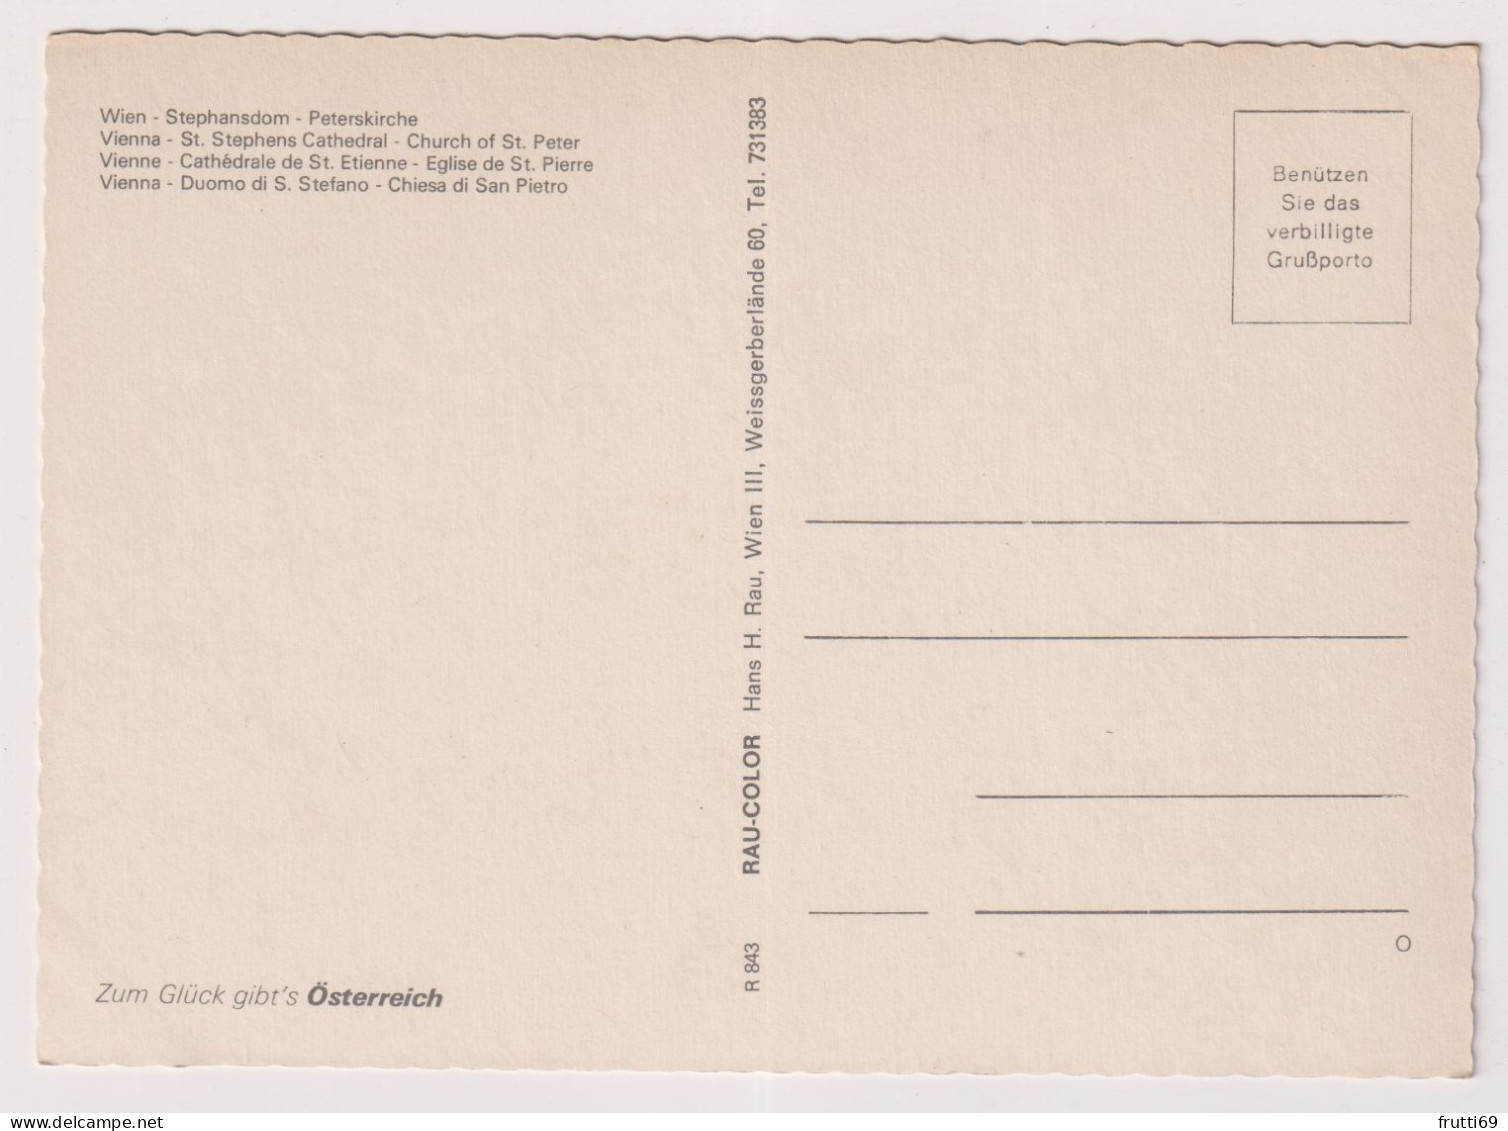 AK 198905 AUSTRIA - Wien - Stephansdom - Peterskirche - Kerken